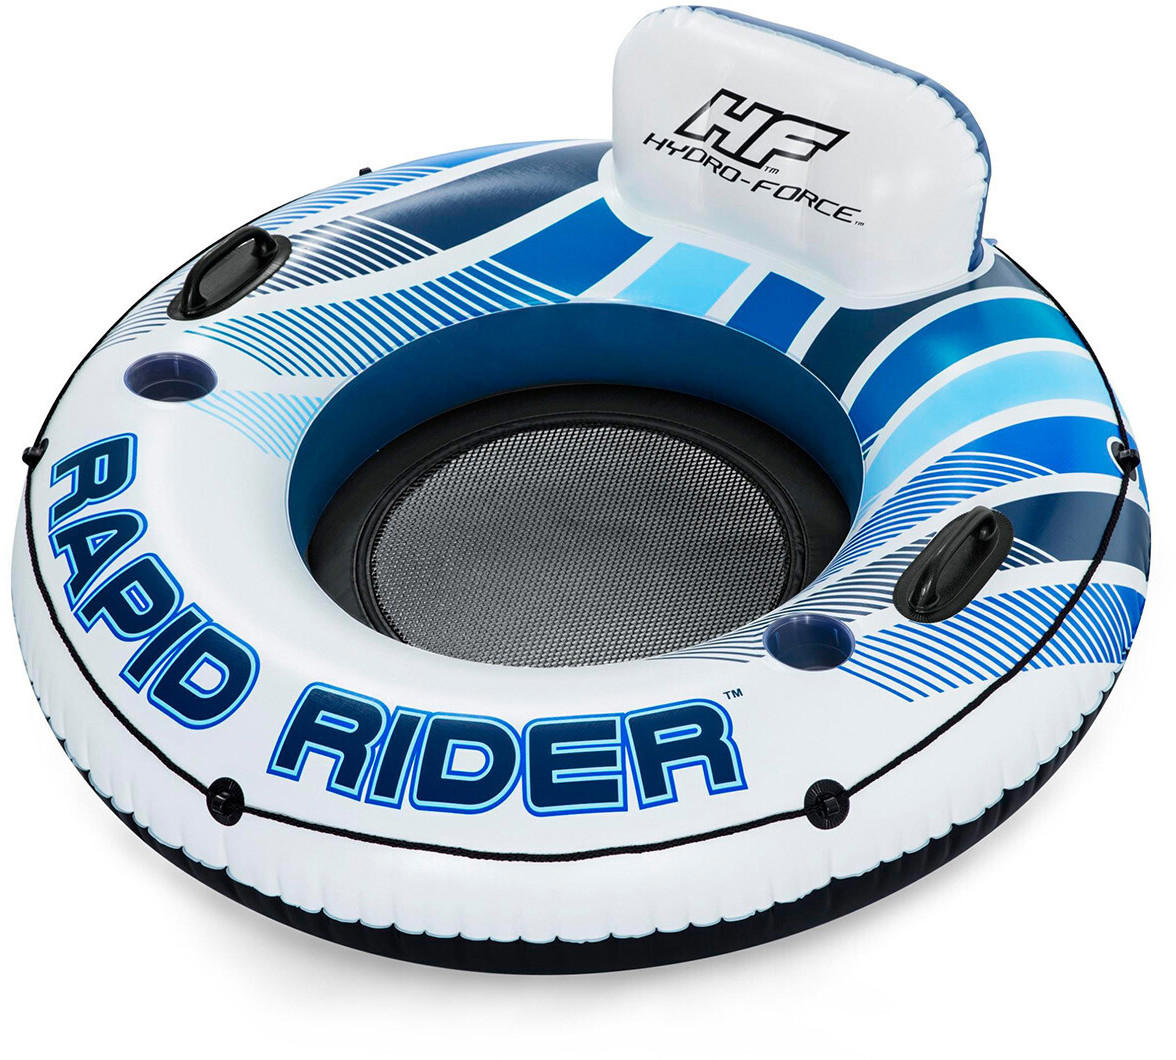 Bestway Rapid Rider 135cm blue